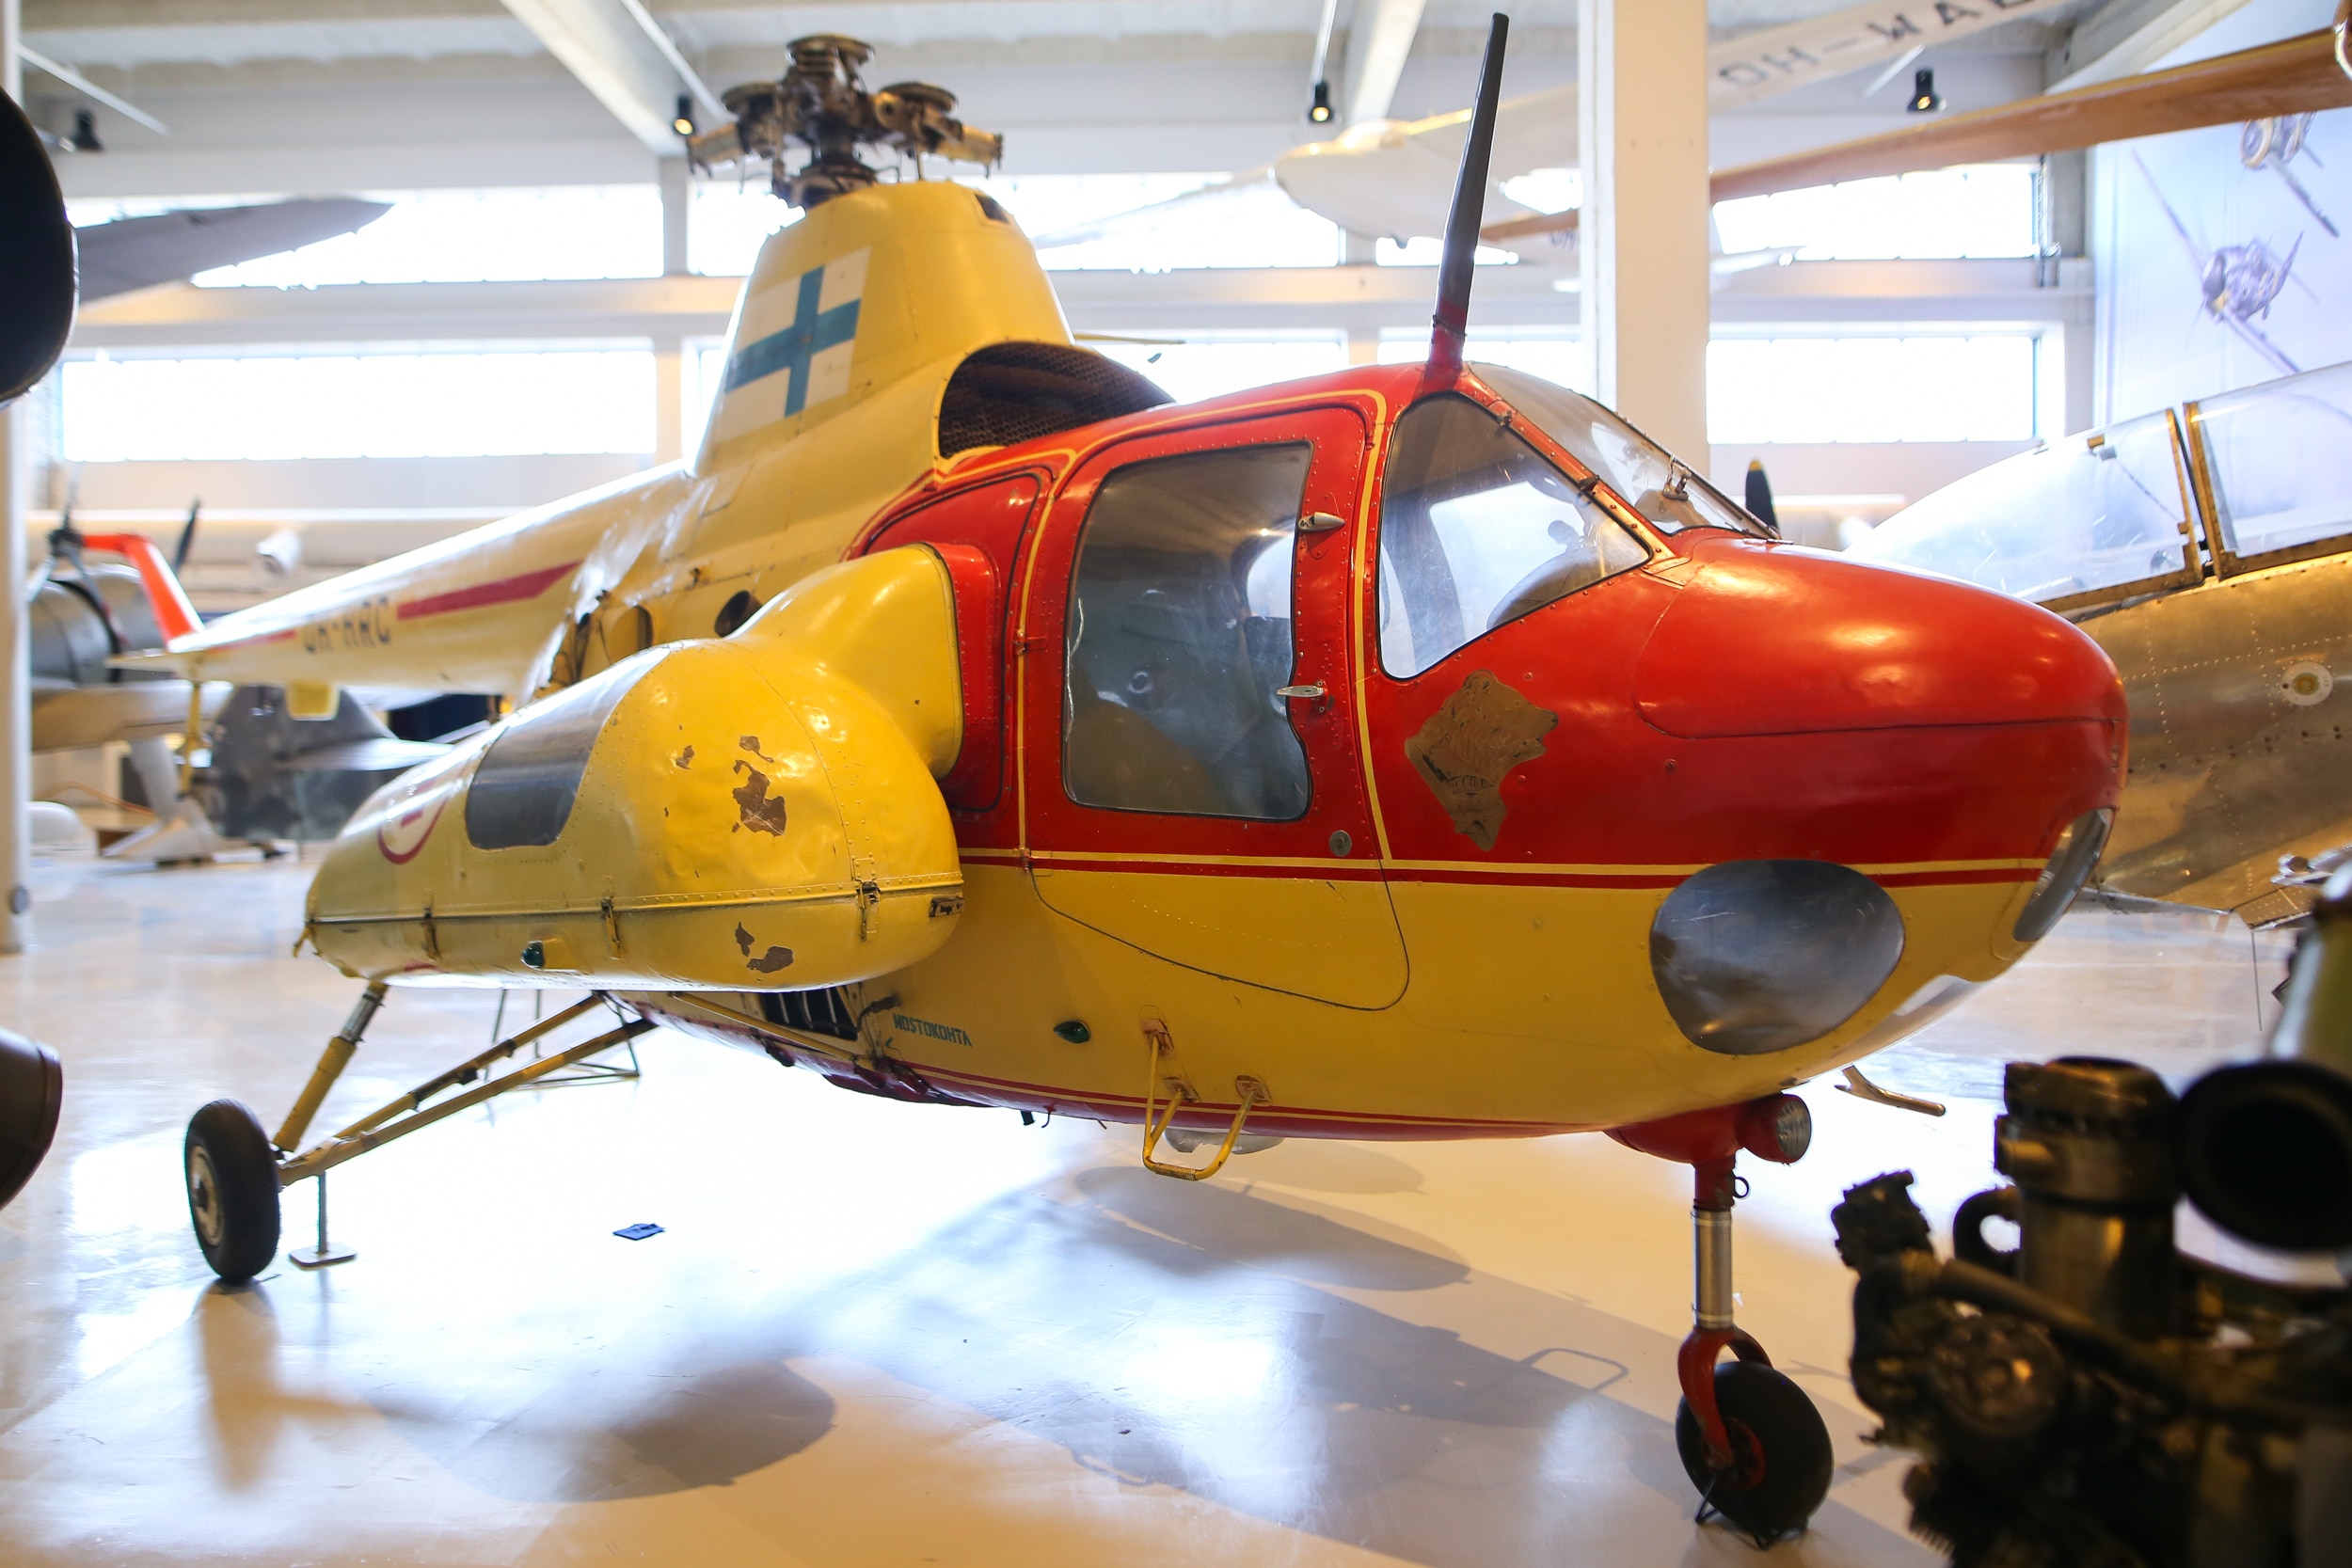 Kelta-punainen helikopteri näyttelyhallissa. Kopterin oikeassa kyljessä on sairaankuljetusta varten konsoli.